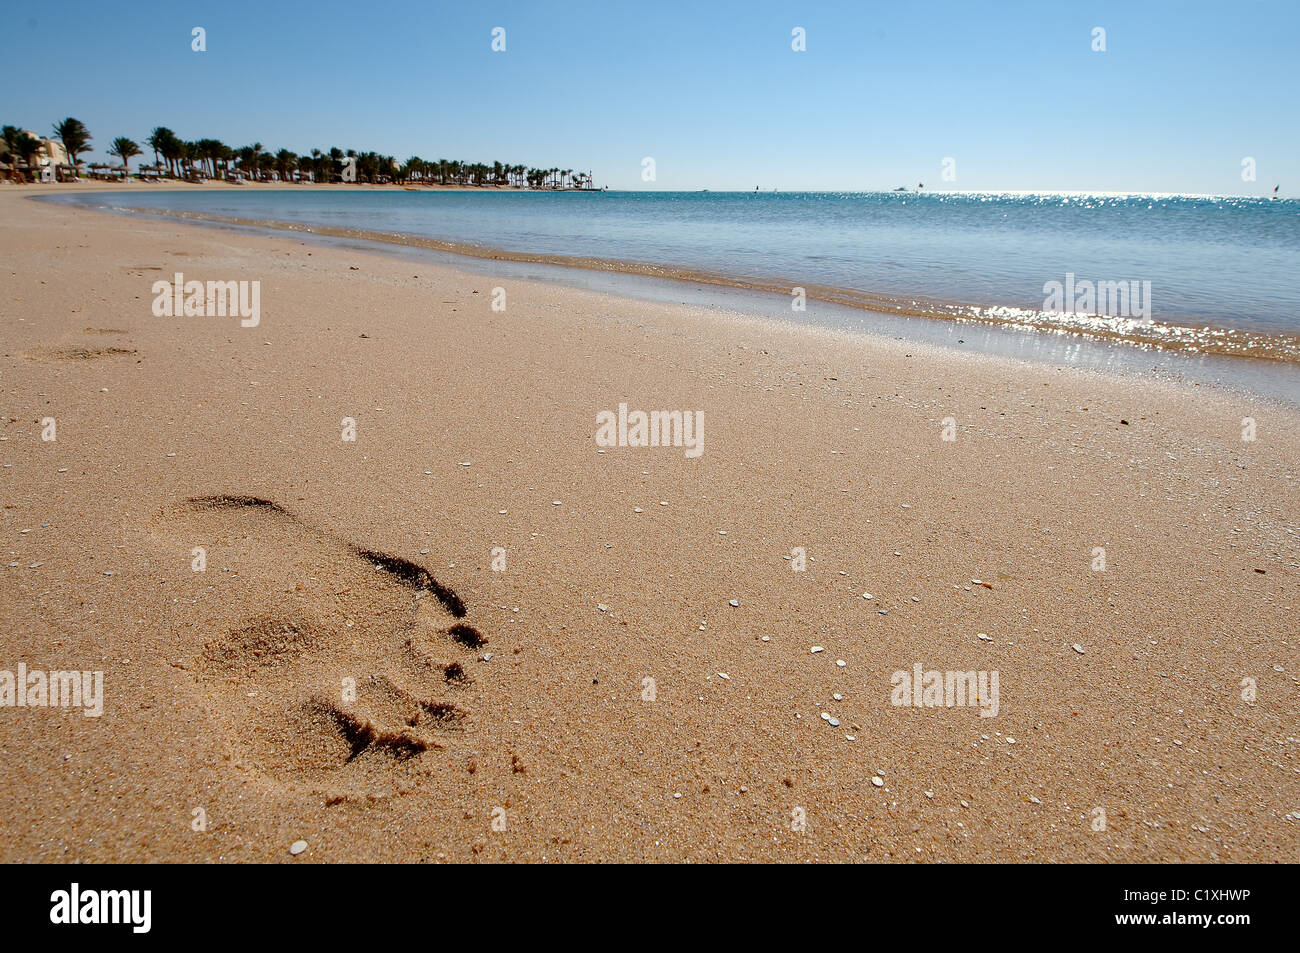 Footprint on the sand on the beach Stock Photo